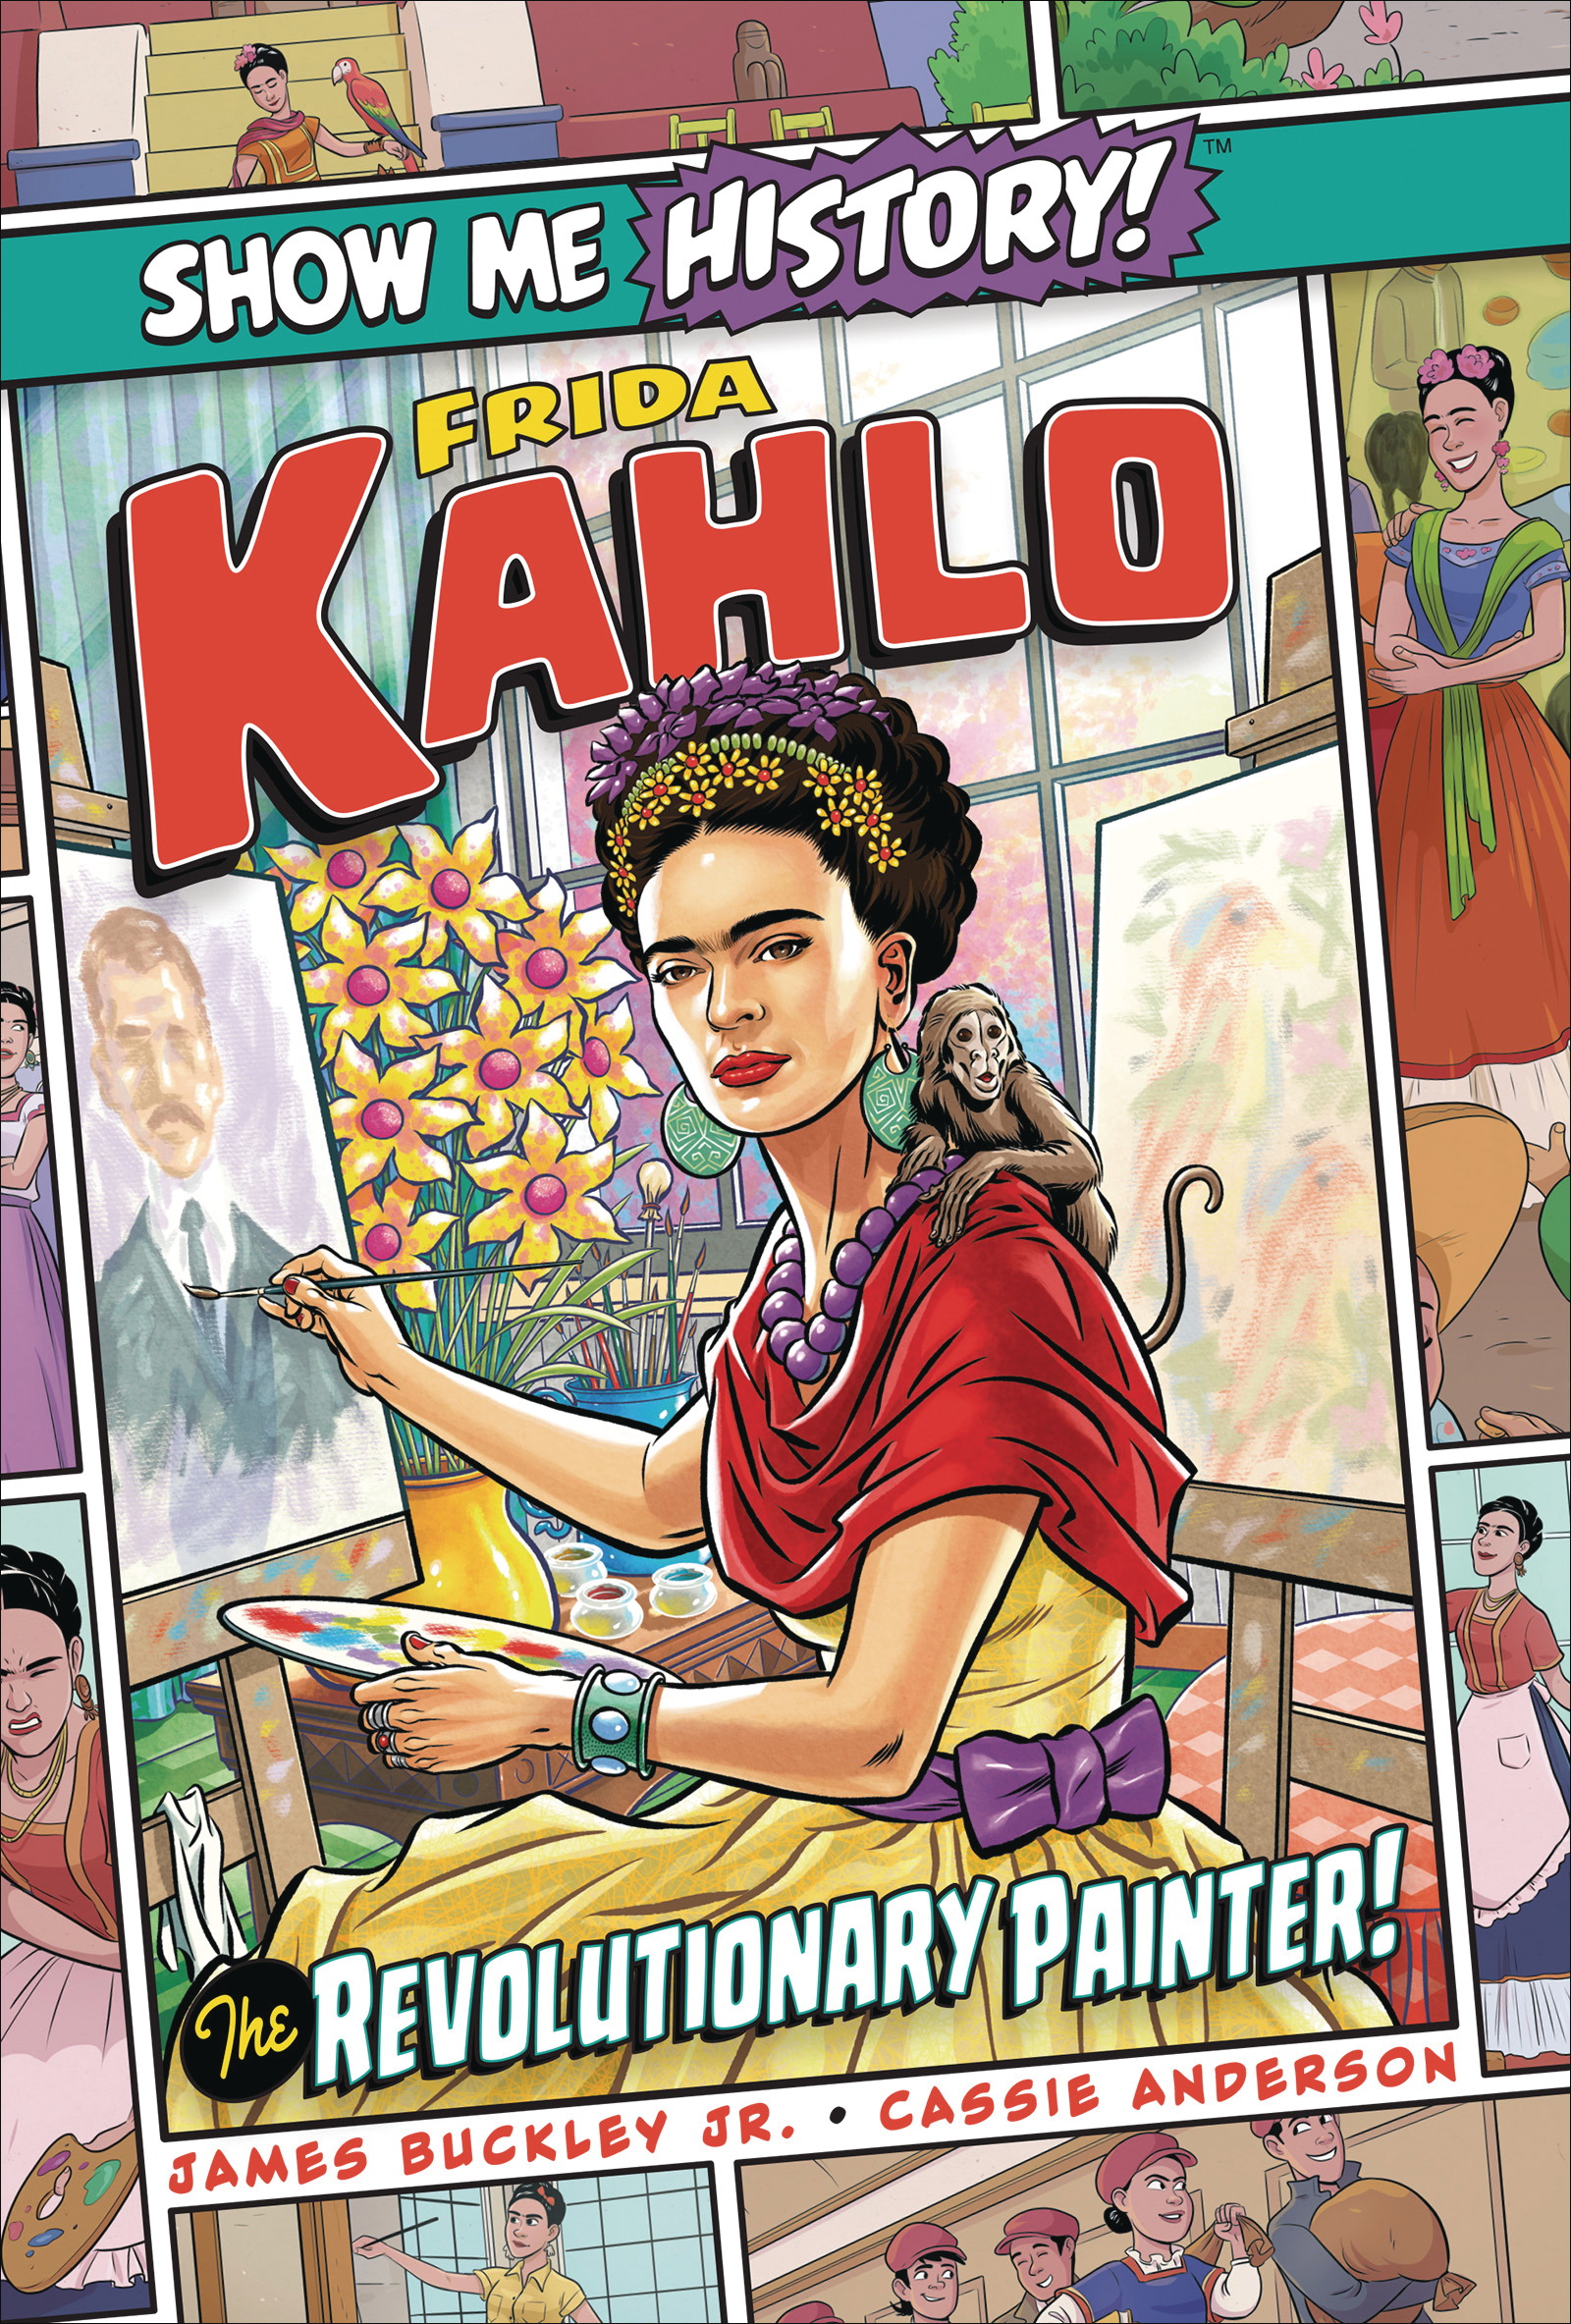 Show Me History #18 Frida Kahlo Revolutionary Painter